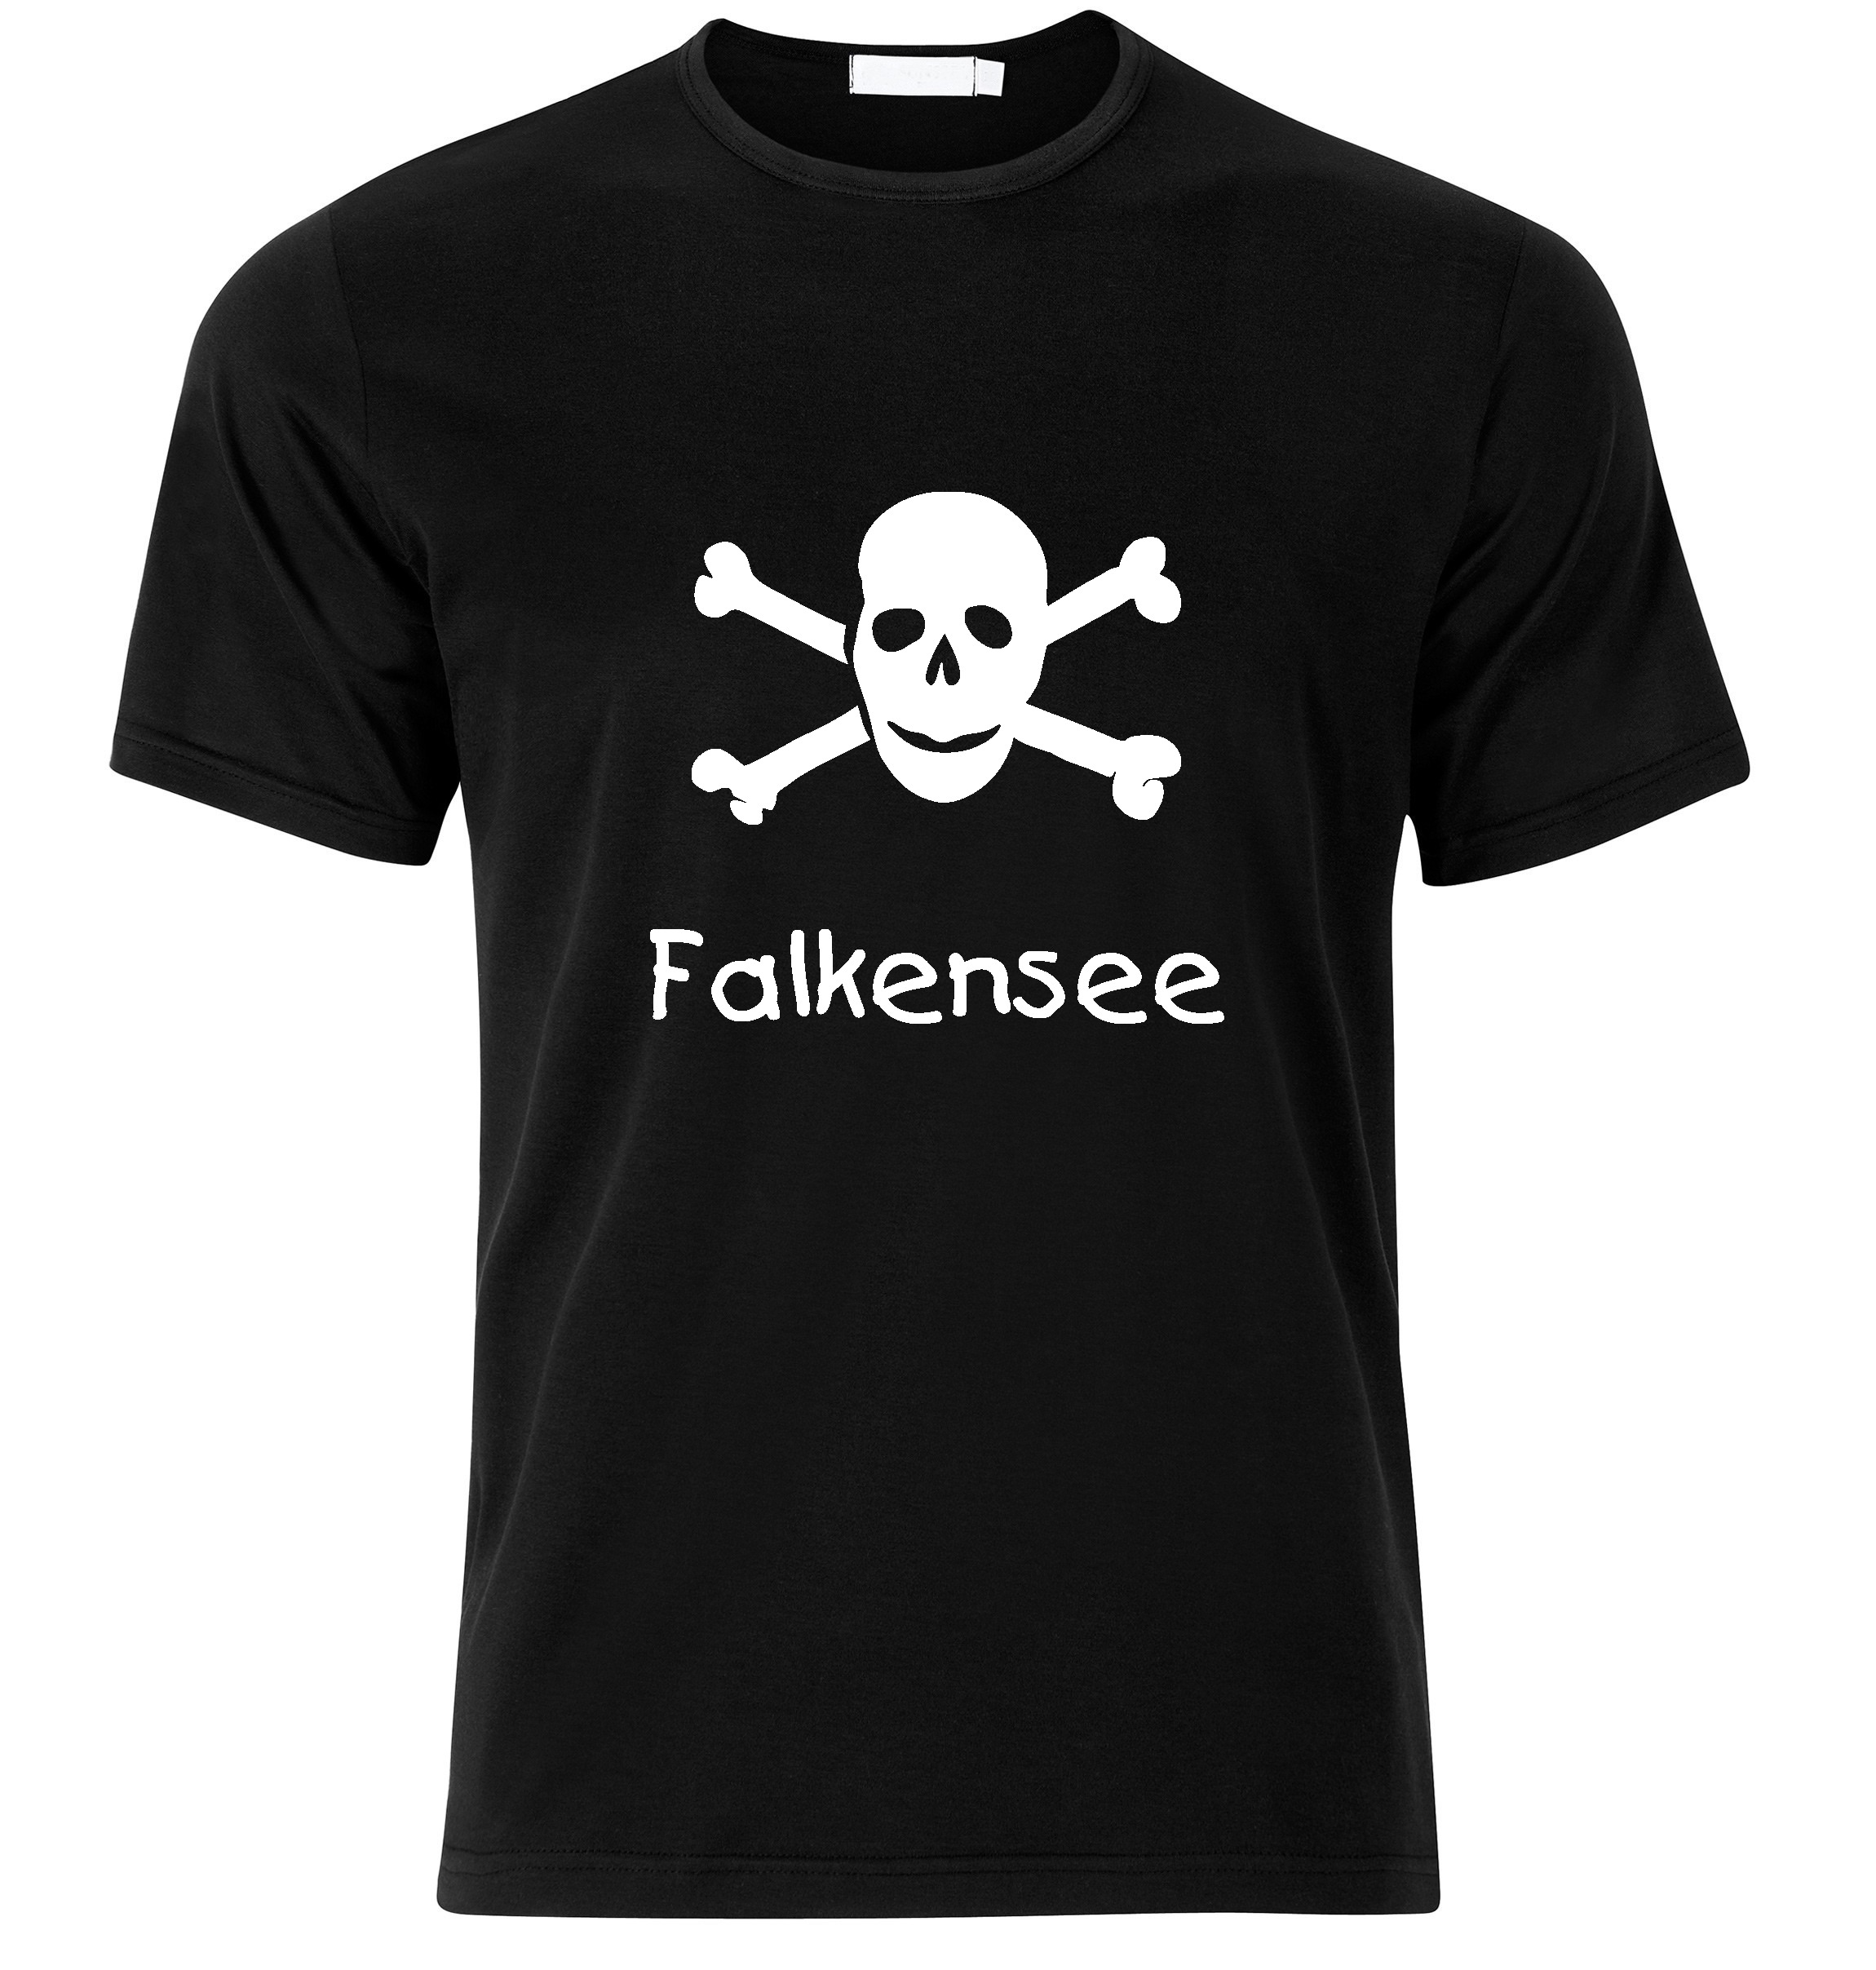 T-Shirt Falkensee Jolly Roger, Totenkopf